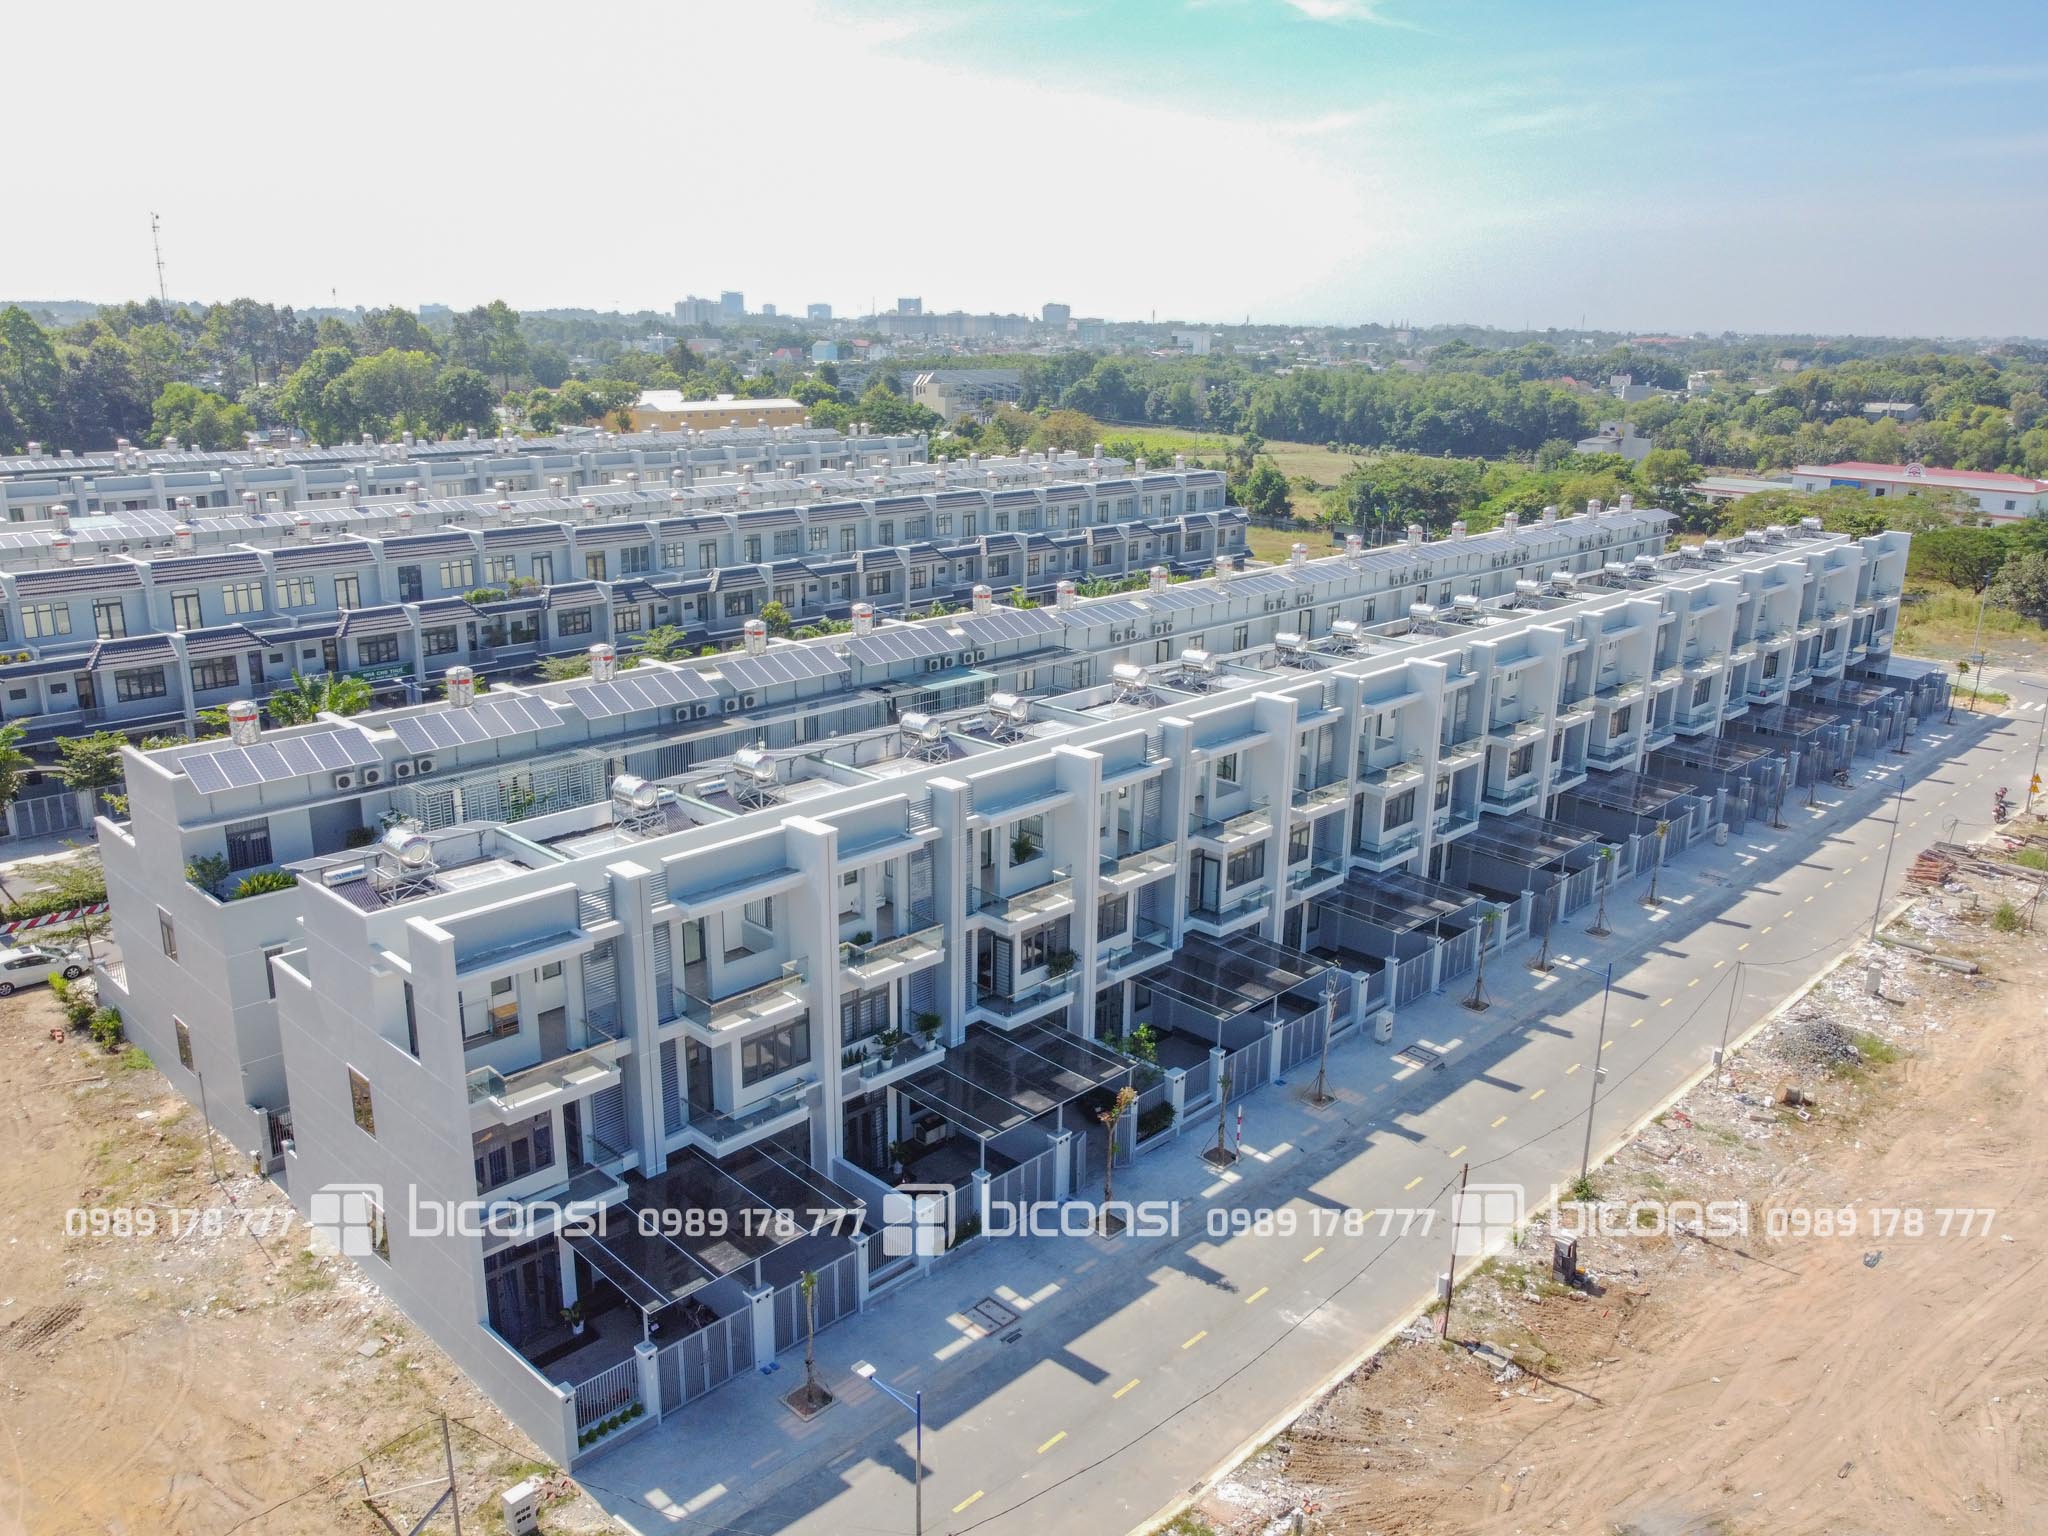 Tiến độ xây dựng đợt 3 - lô E dự án Khu nhà ở TMDV Phú Mỹ (Tp. Thủ Dầu Một) - Tháng 12/2020